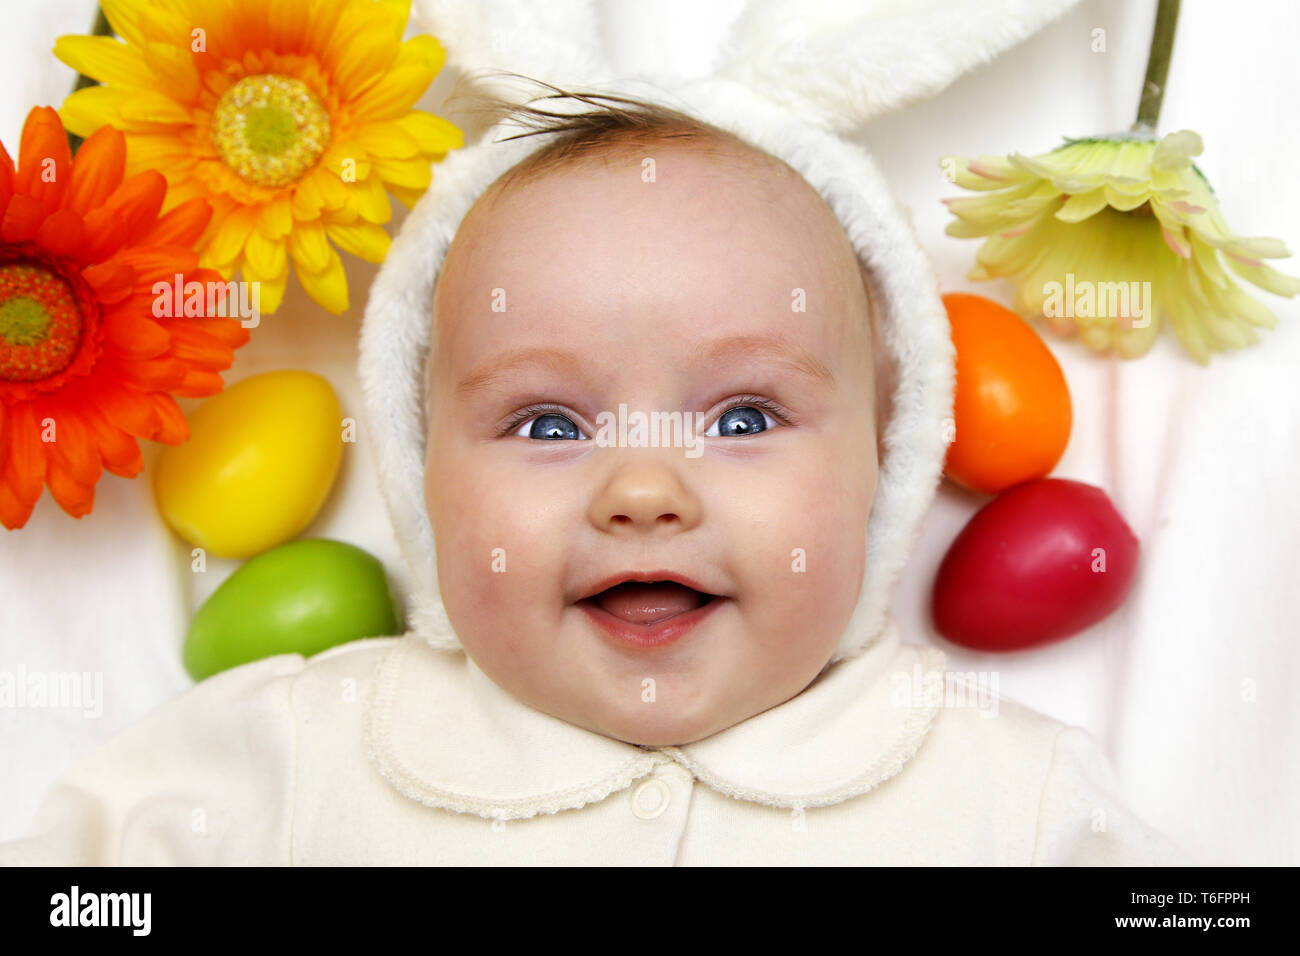 Nouveau-né fille garçon bébé européen avec les oreilles de lapin de Pâques 3 mois parmi les oeufs colorés et des fleurs Banque D'Images